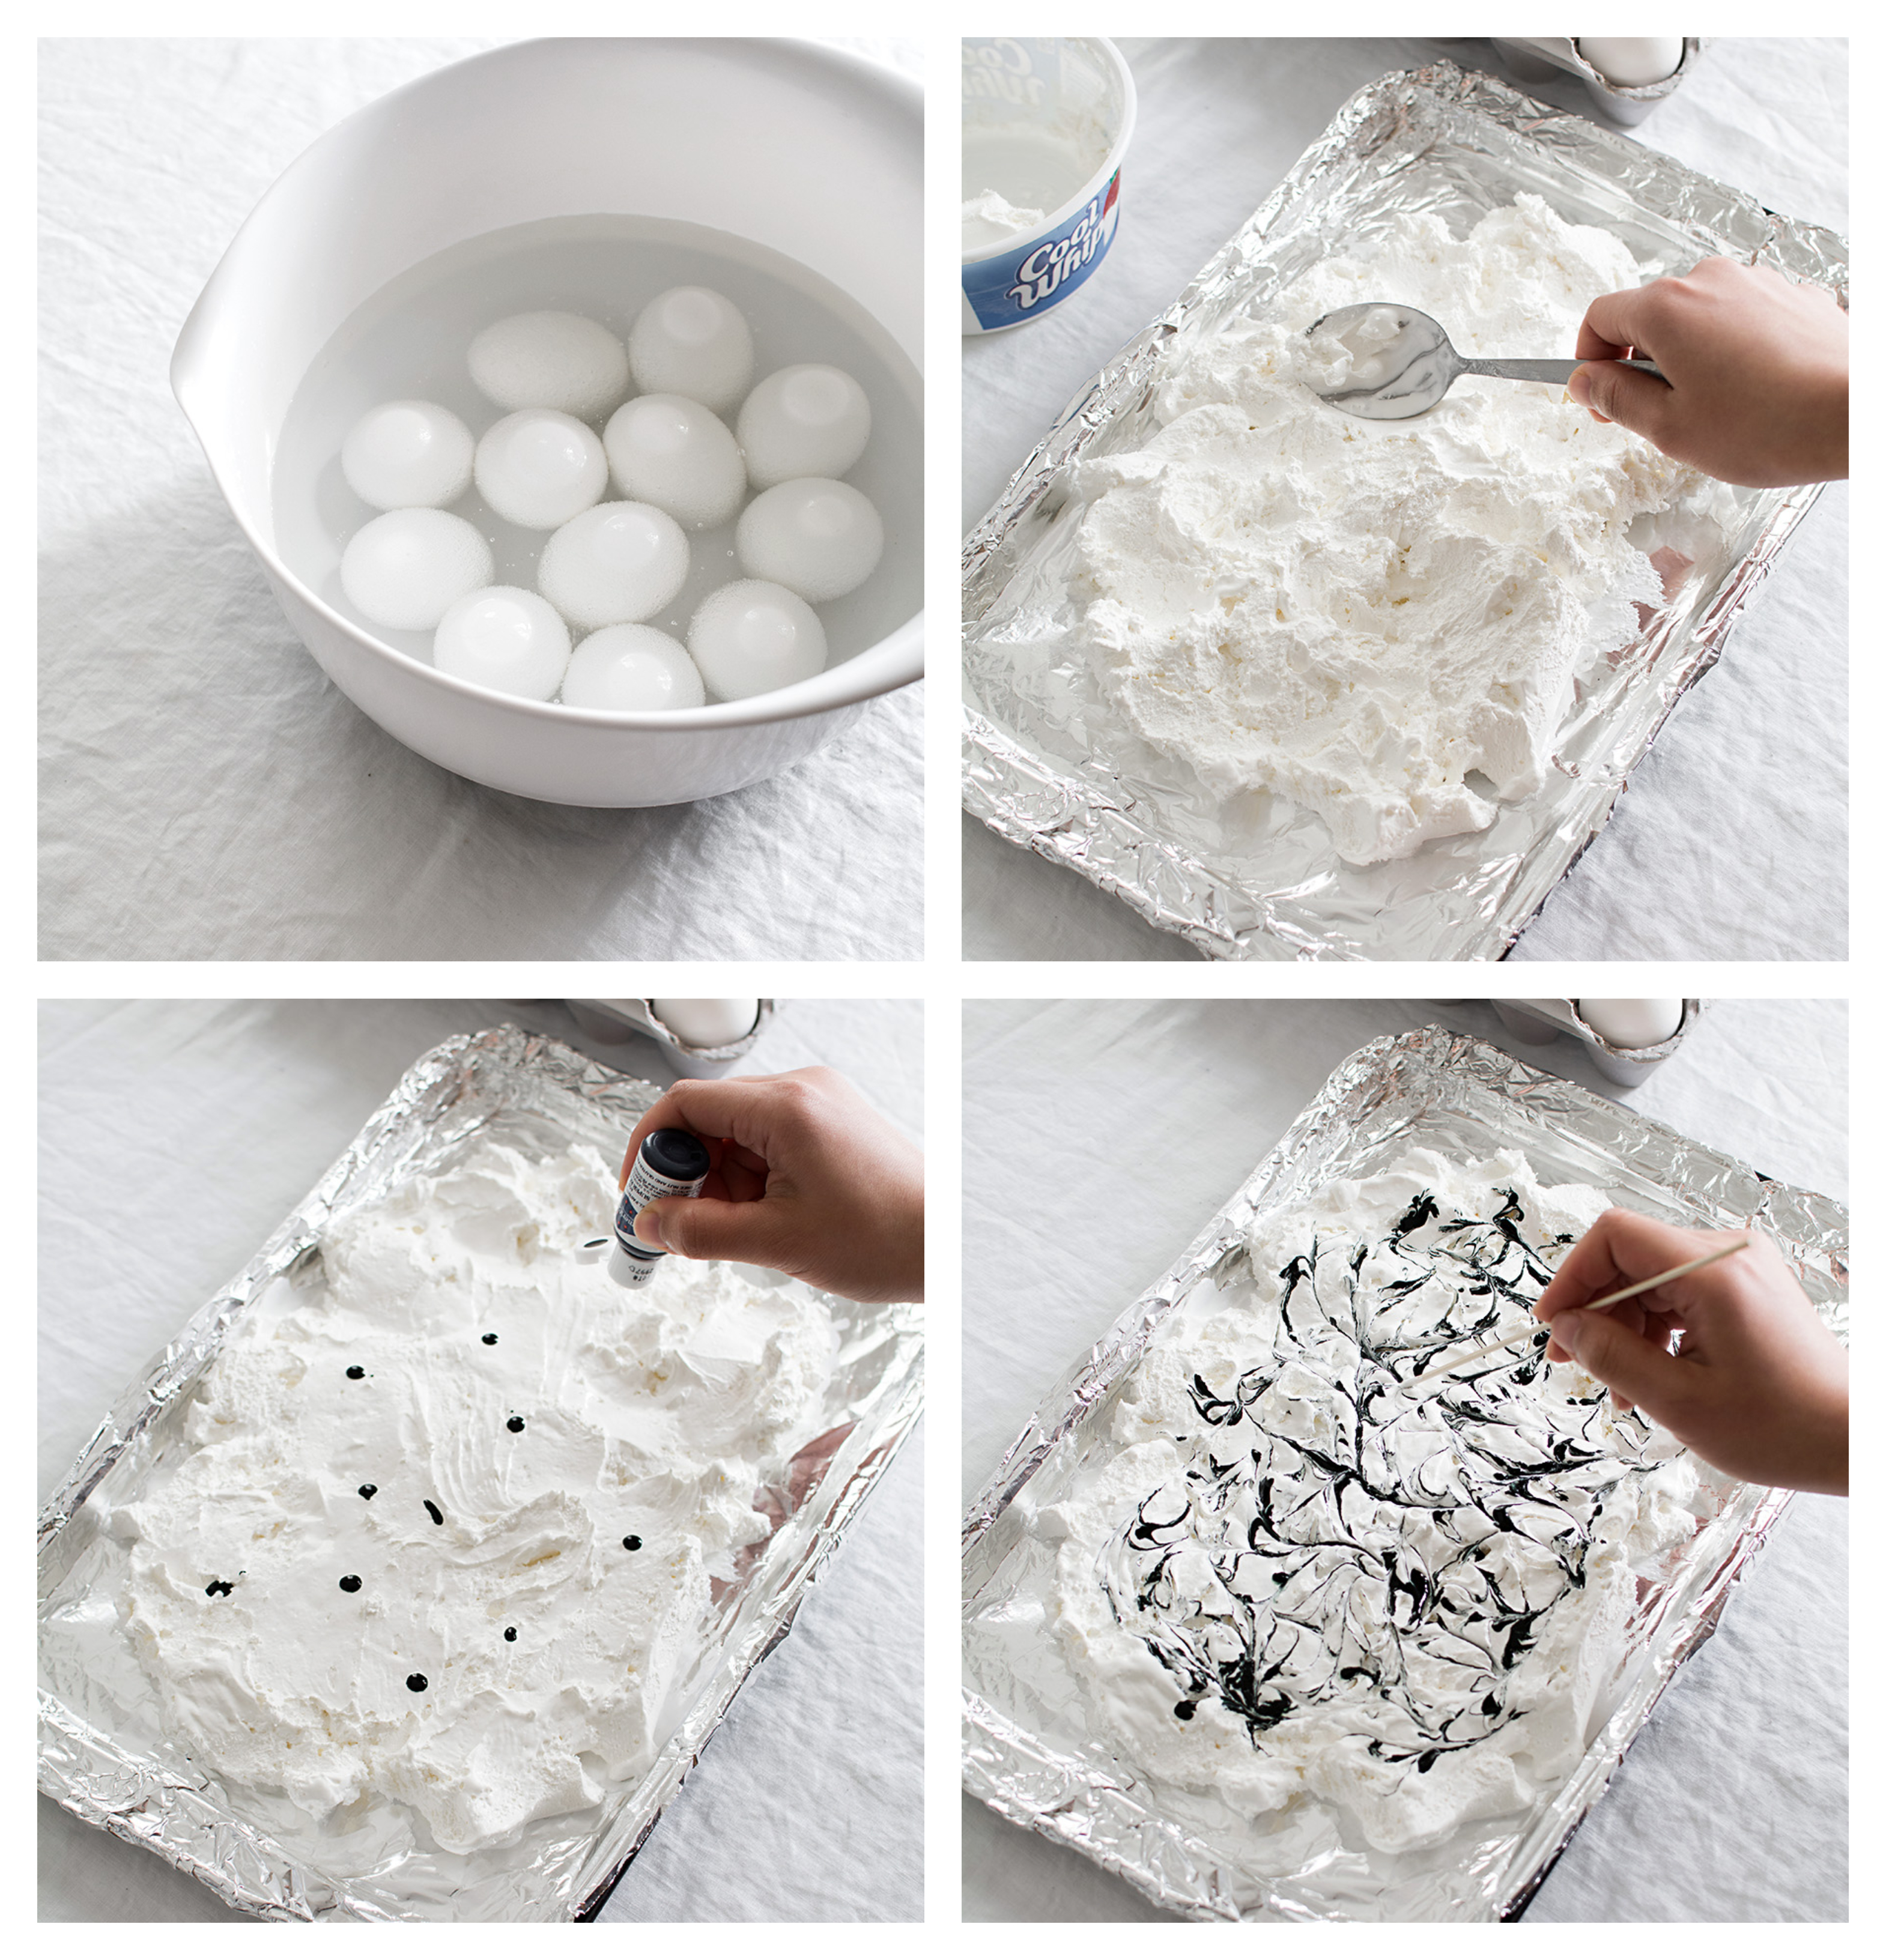 tutoriales sobre como hacer huevos de pascua, huevos bonitos en blanco y negro en imagines 